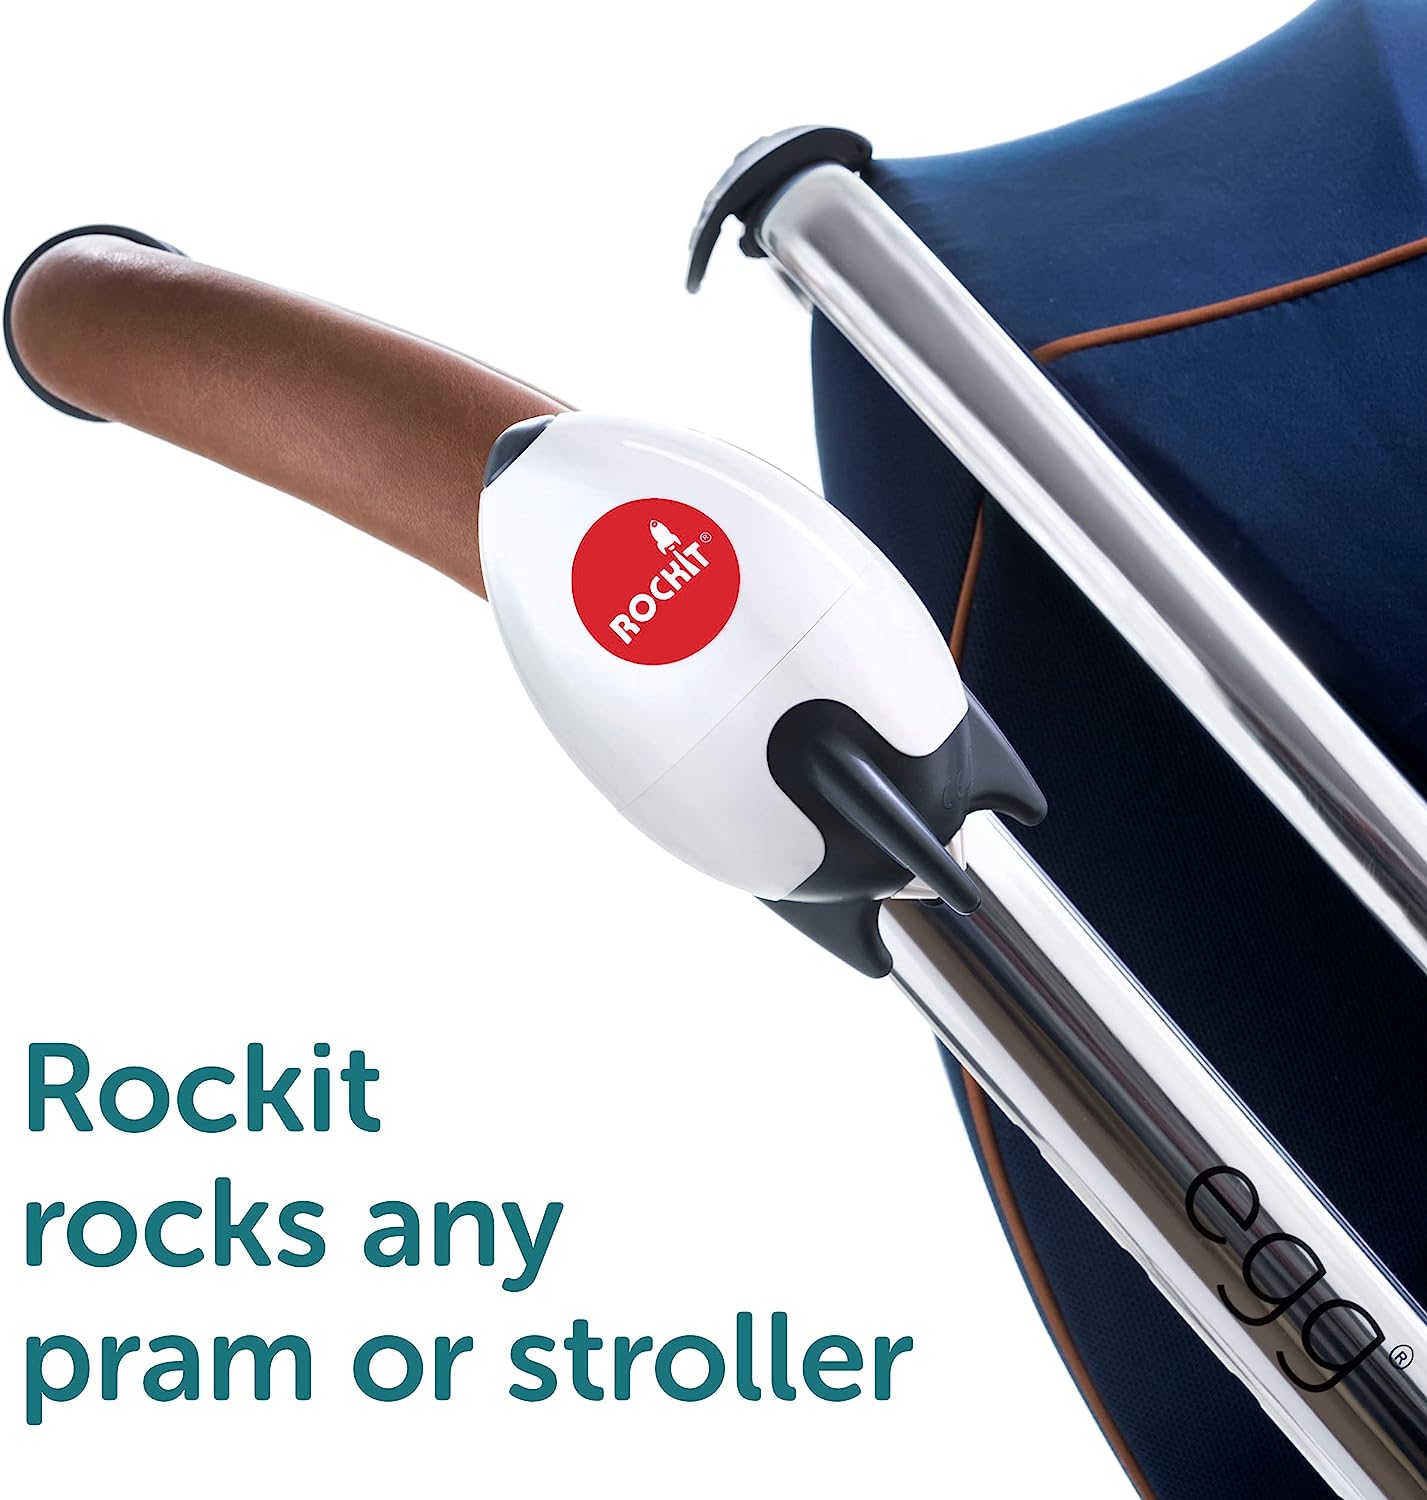 The Rockit Rocker Rechargeable Version - Rockit Rocker